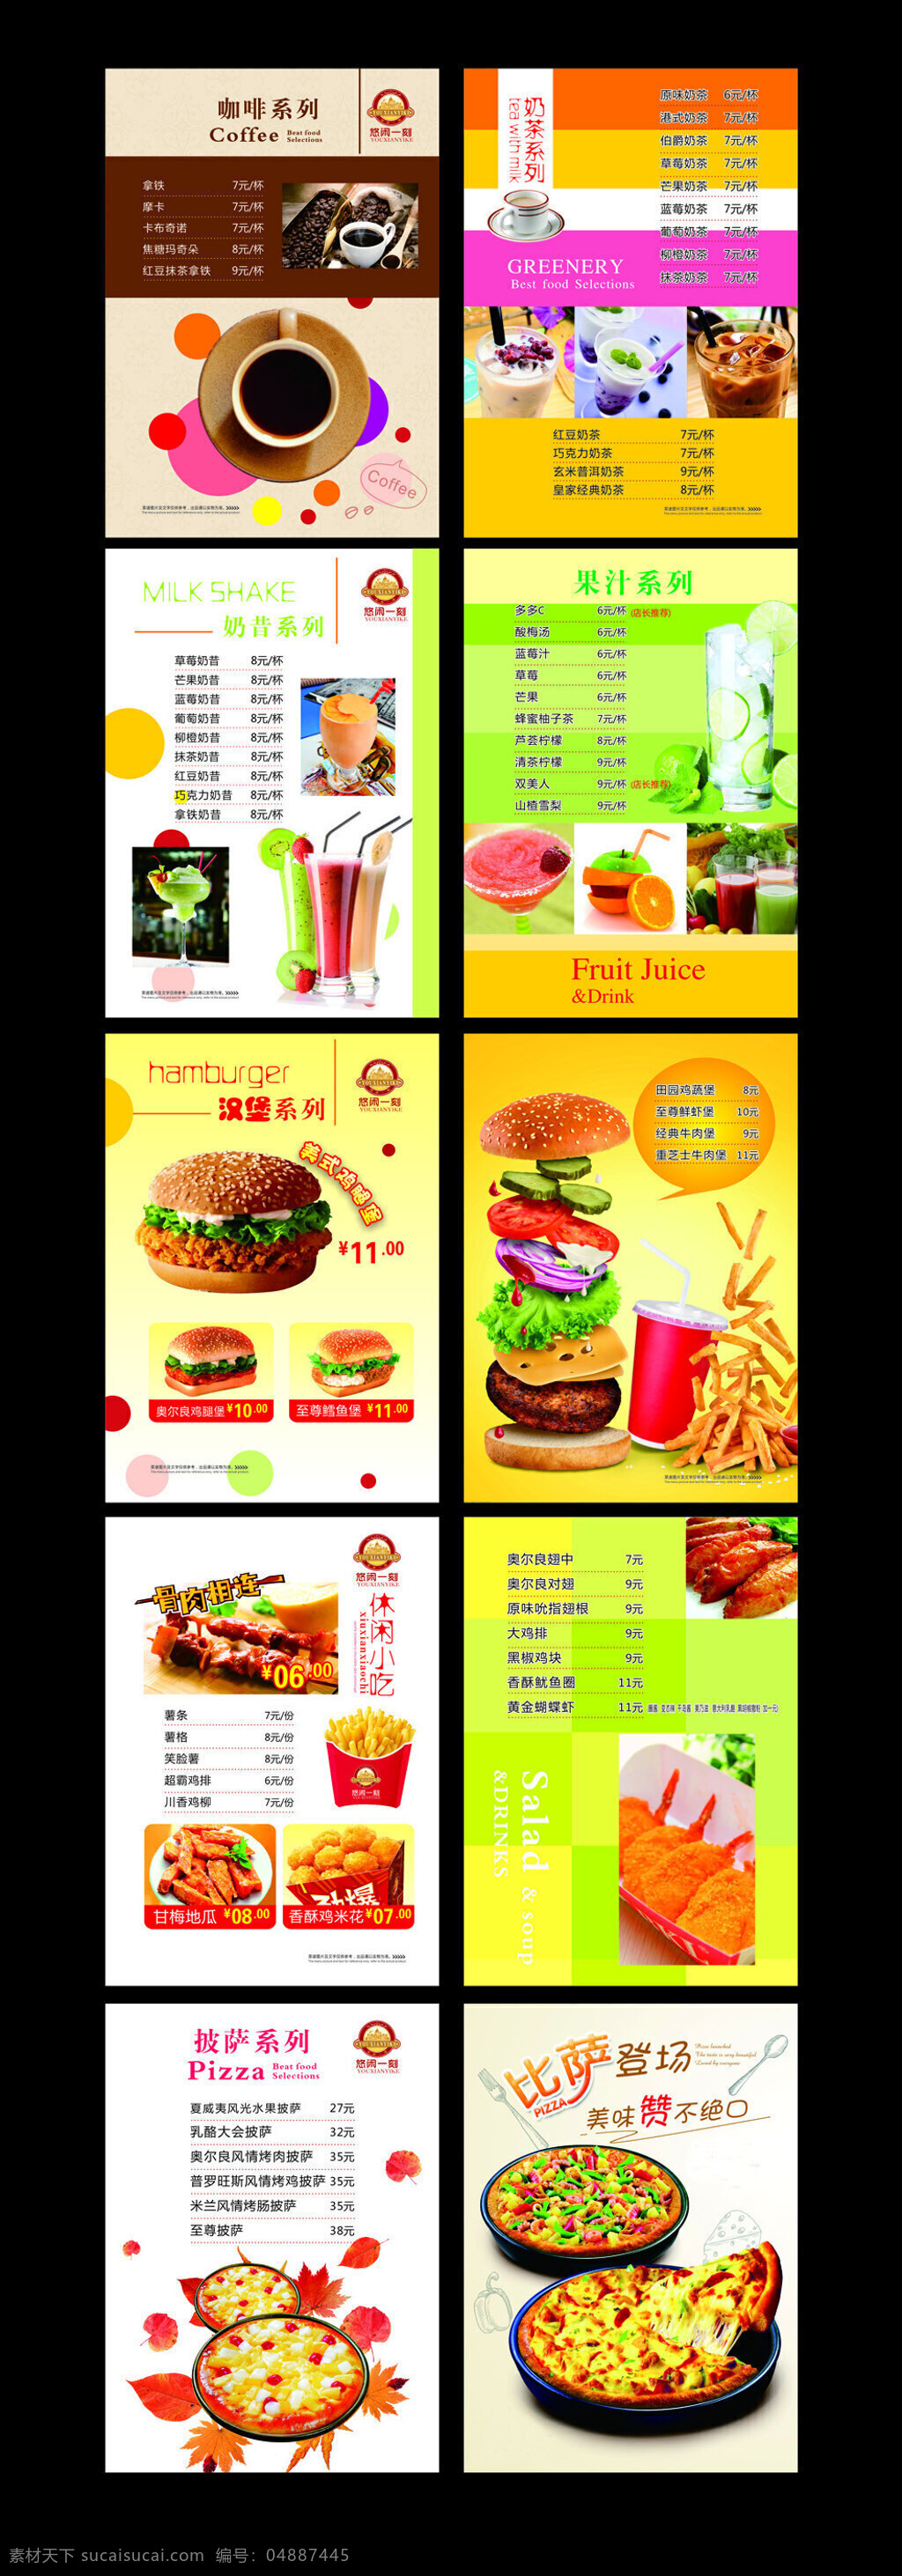 西式 快餐 菜谱 菜单 西式快餐菜谱 西式快餐菜单 矢量 汉堡菜单 咖啡厅菜谱 黑色